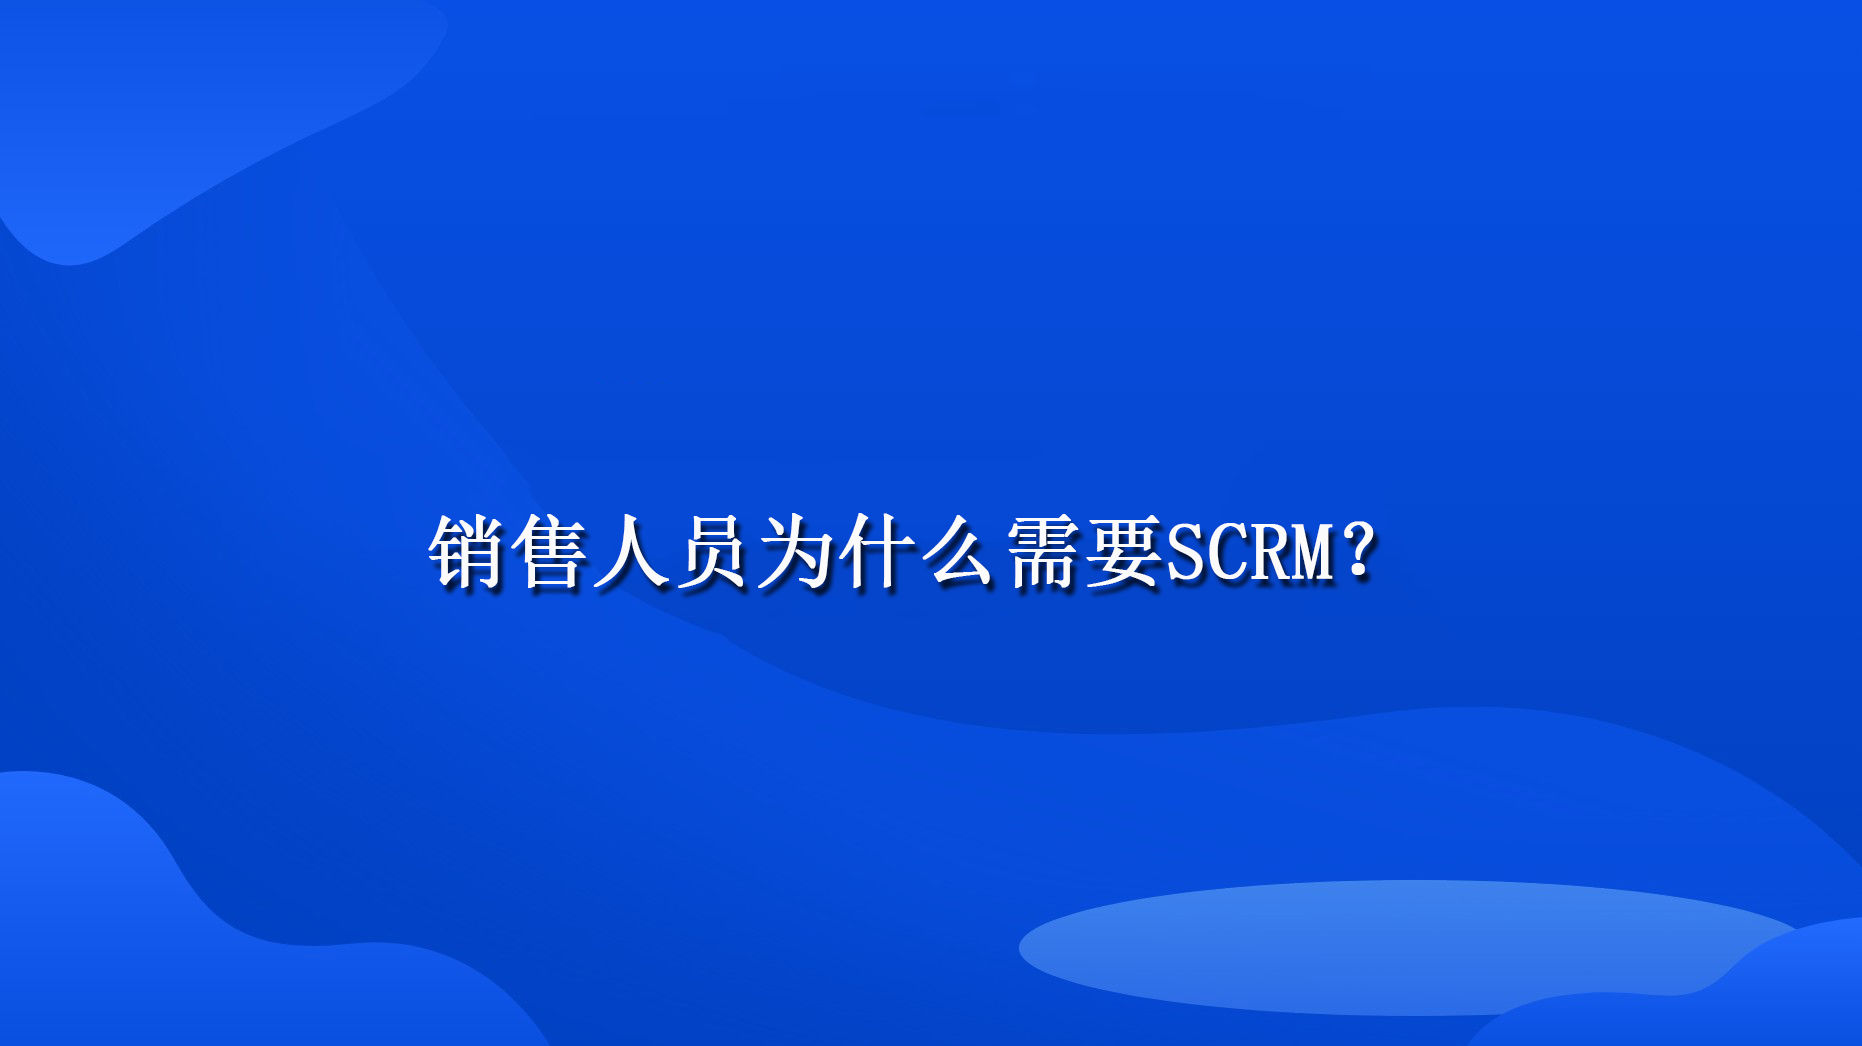 销售人员为什么需要SCRM？